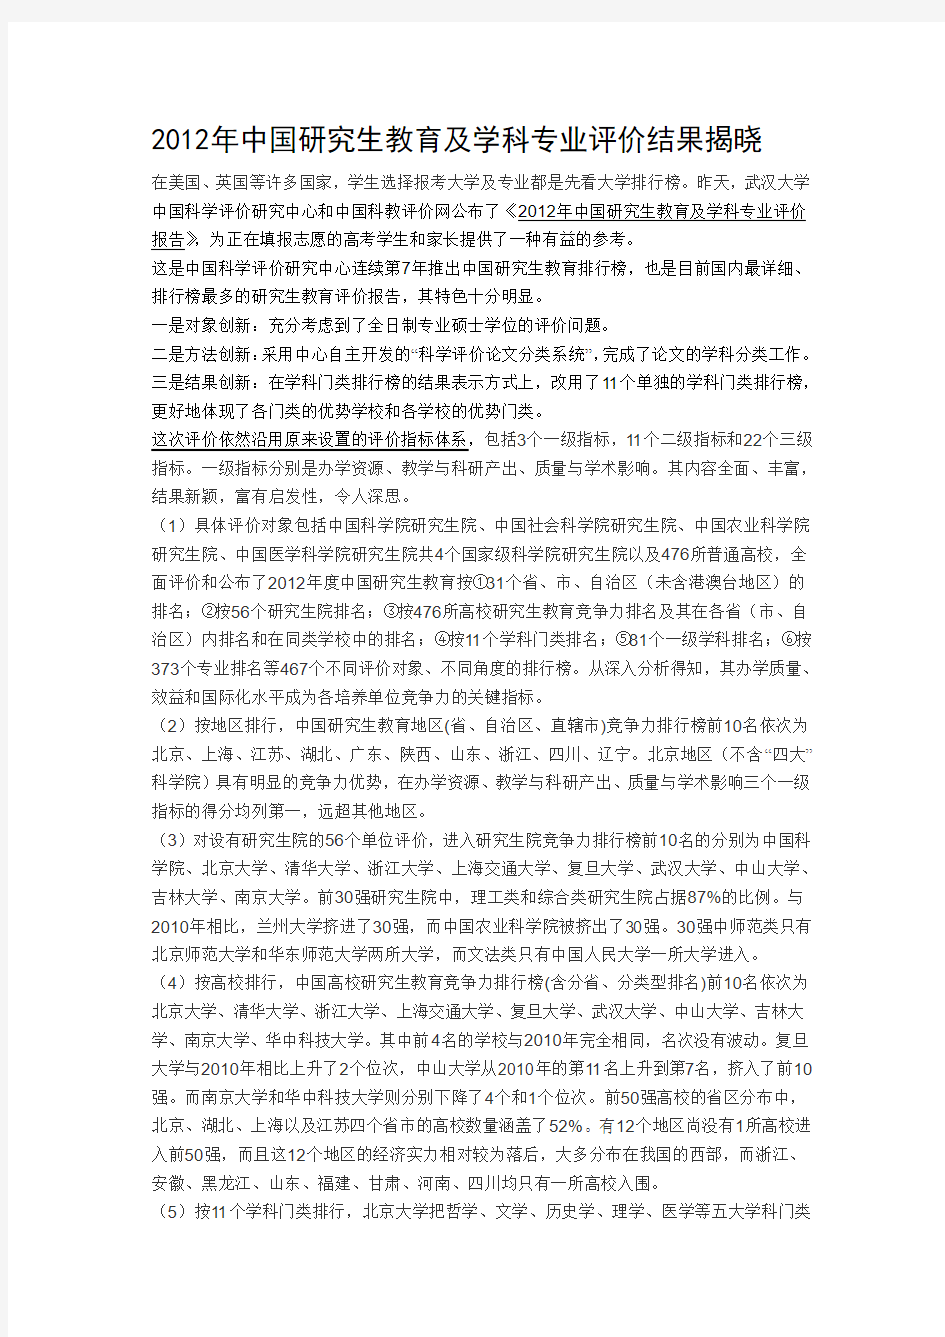 2012-2013中国研究生教育评价报告